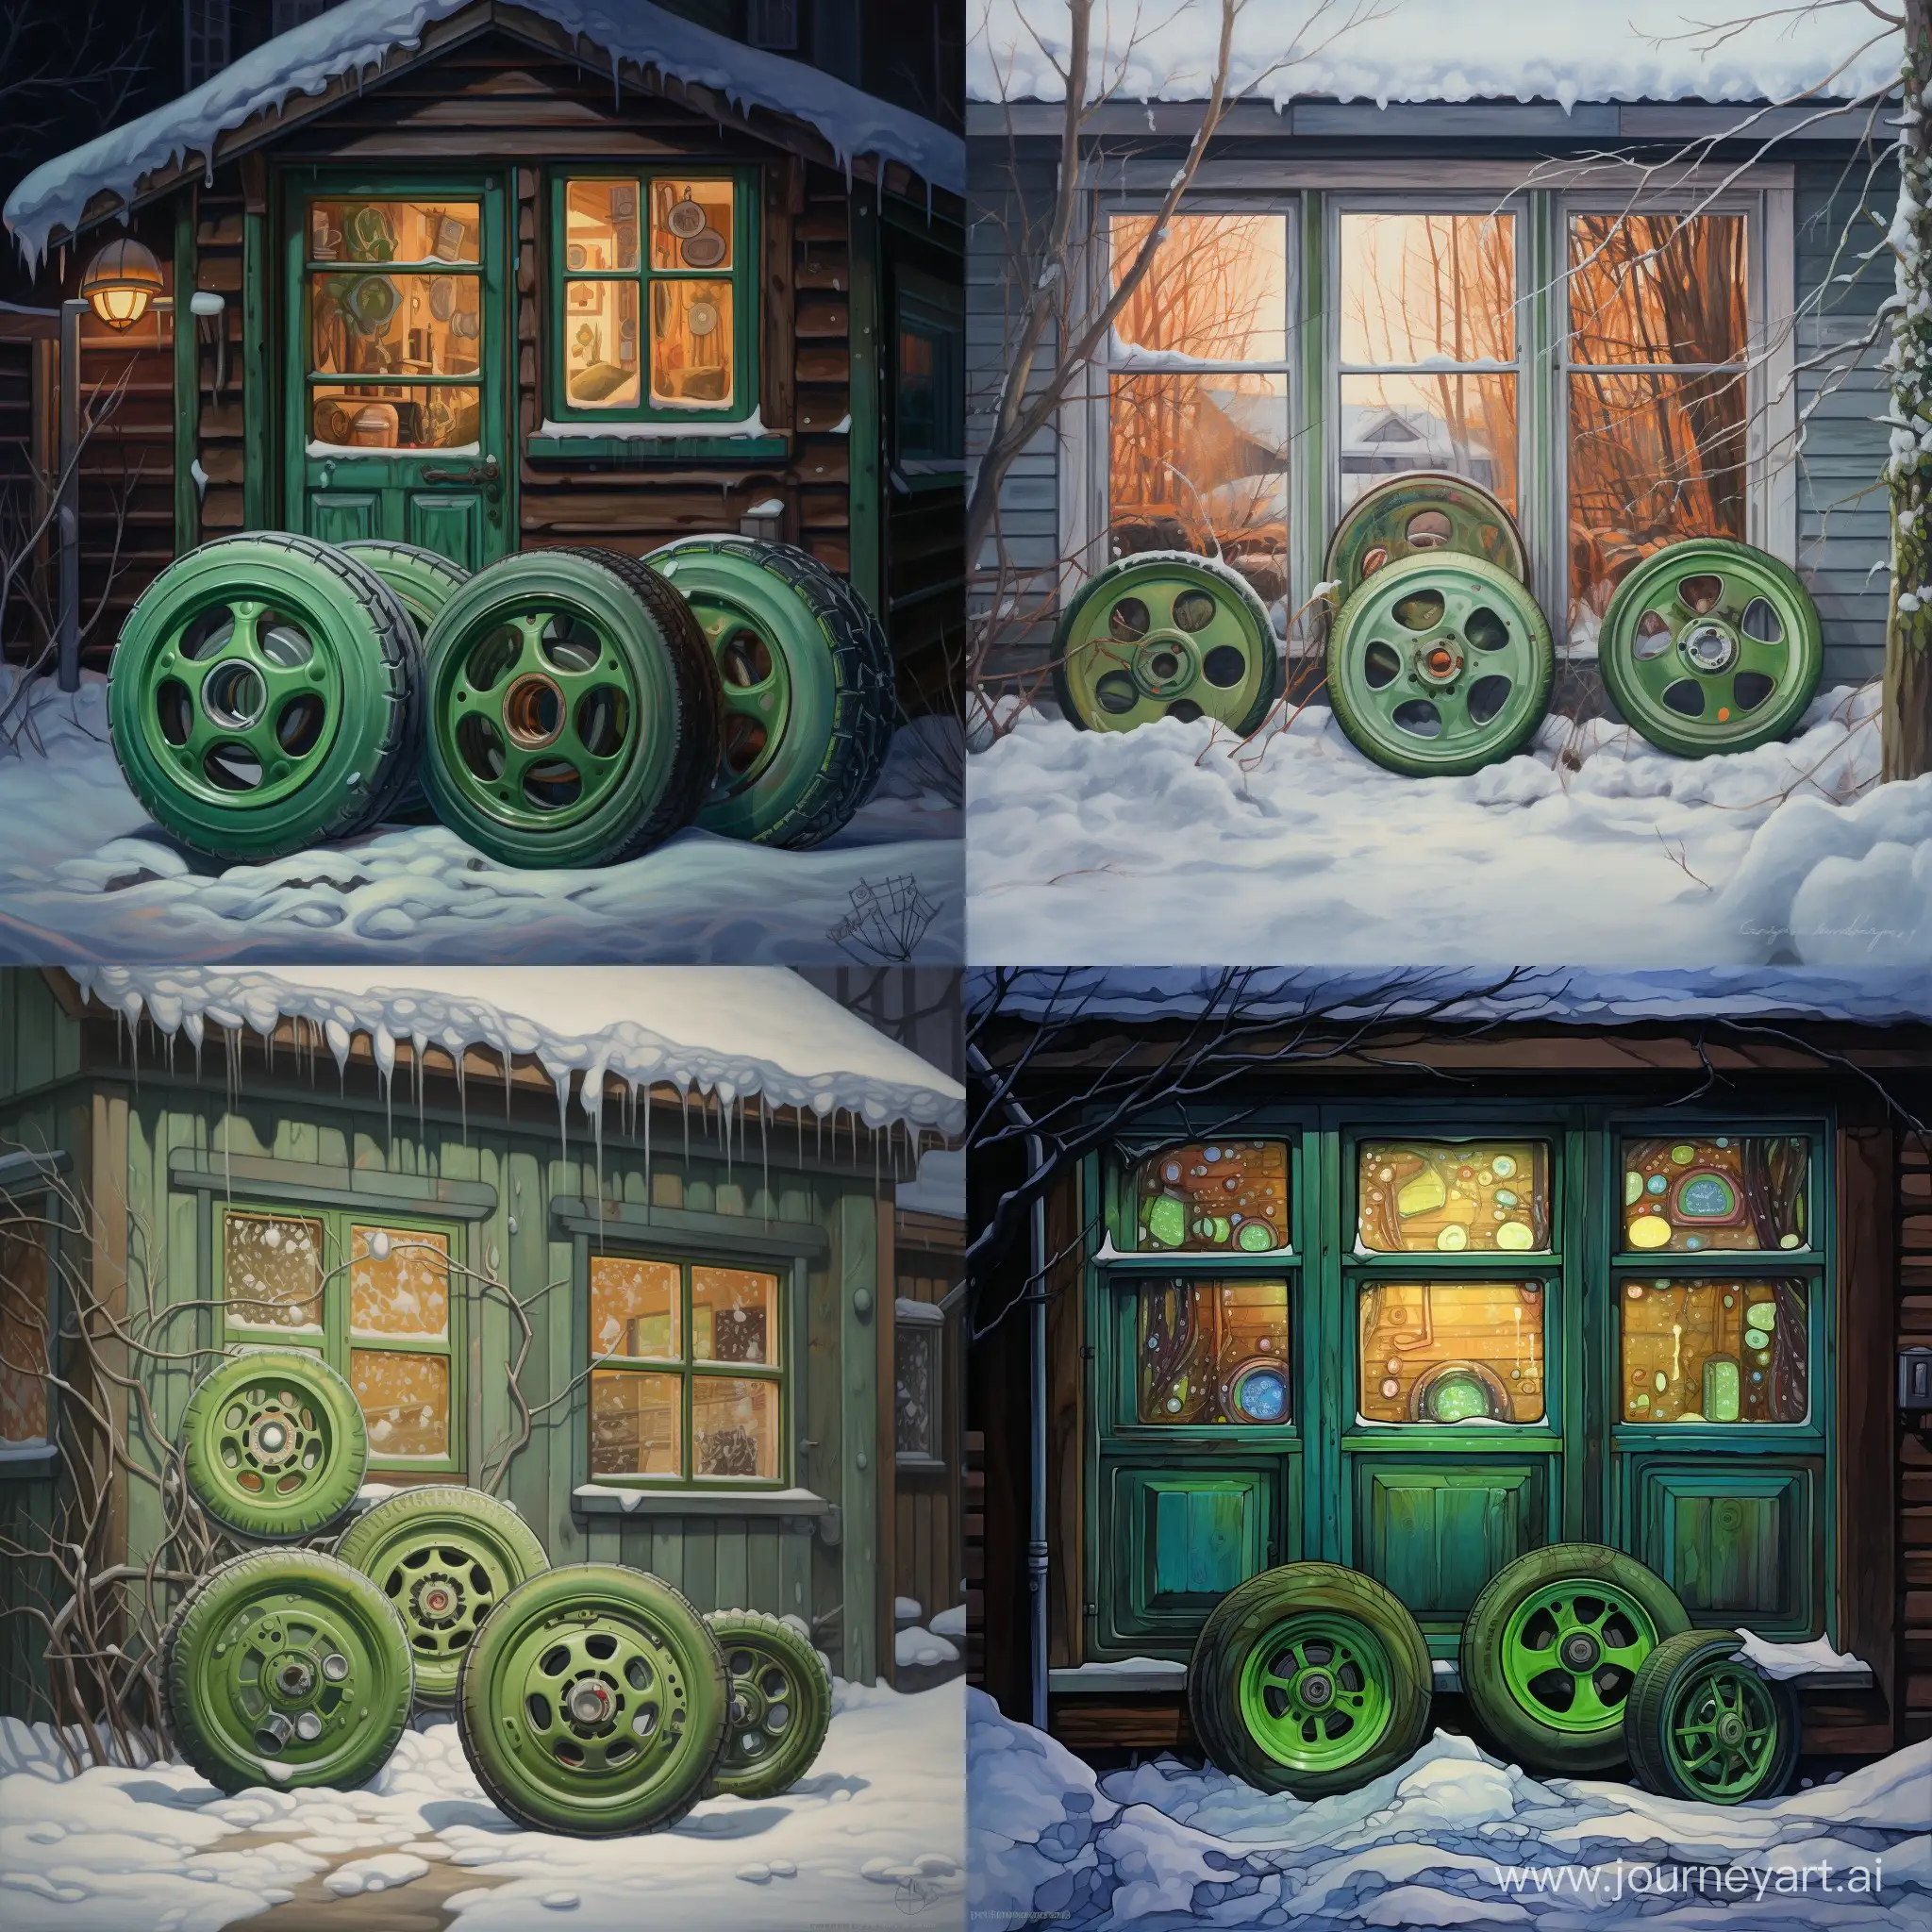 четыре зимних колеса с дисками, которые лежат на снегу возле гаража, гараж закрыт, а из окна гаража зеленый свет